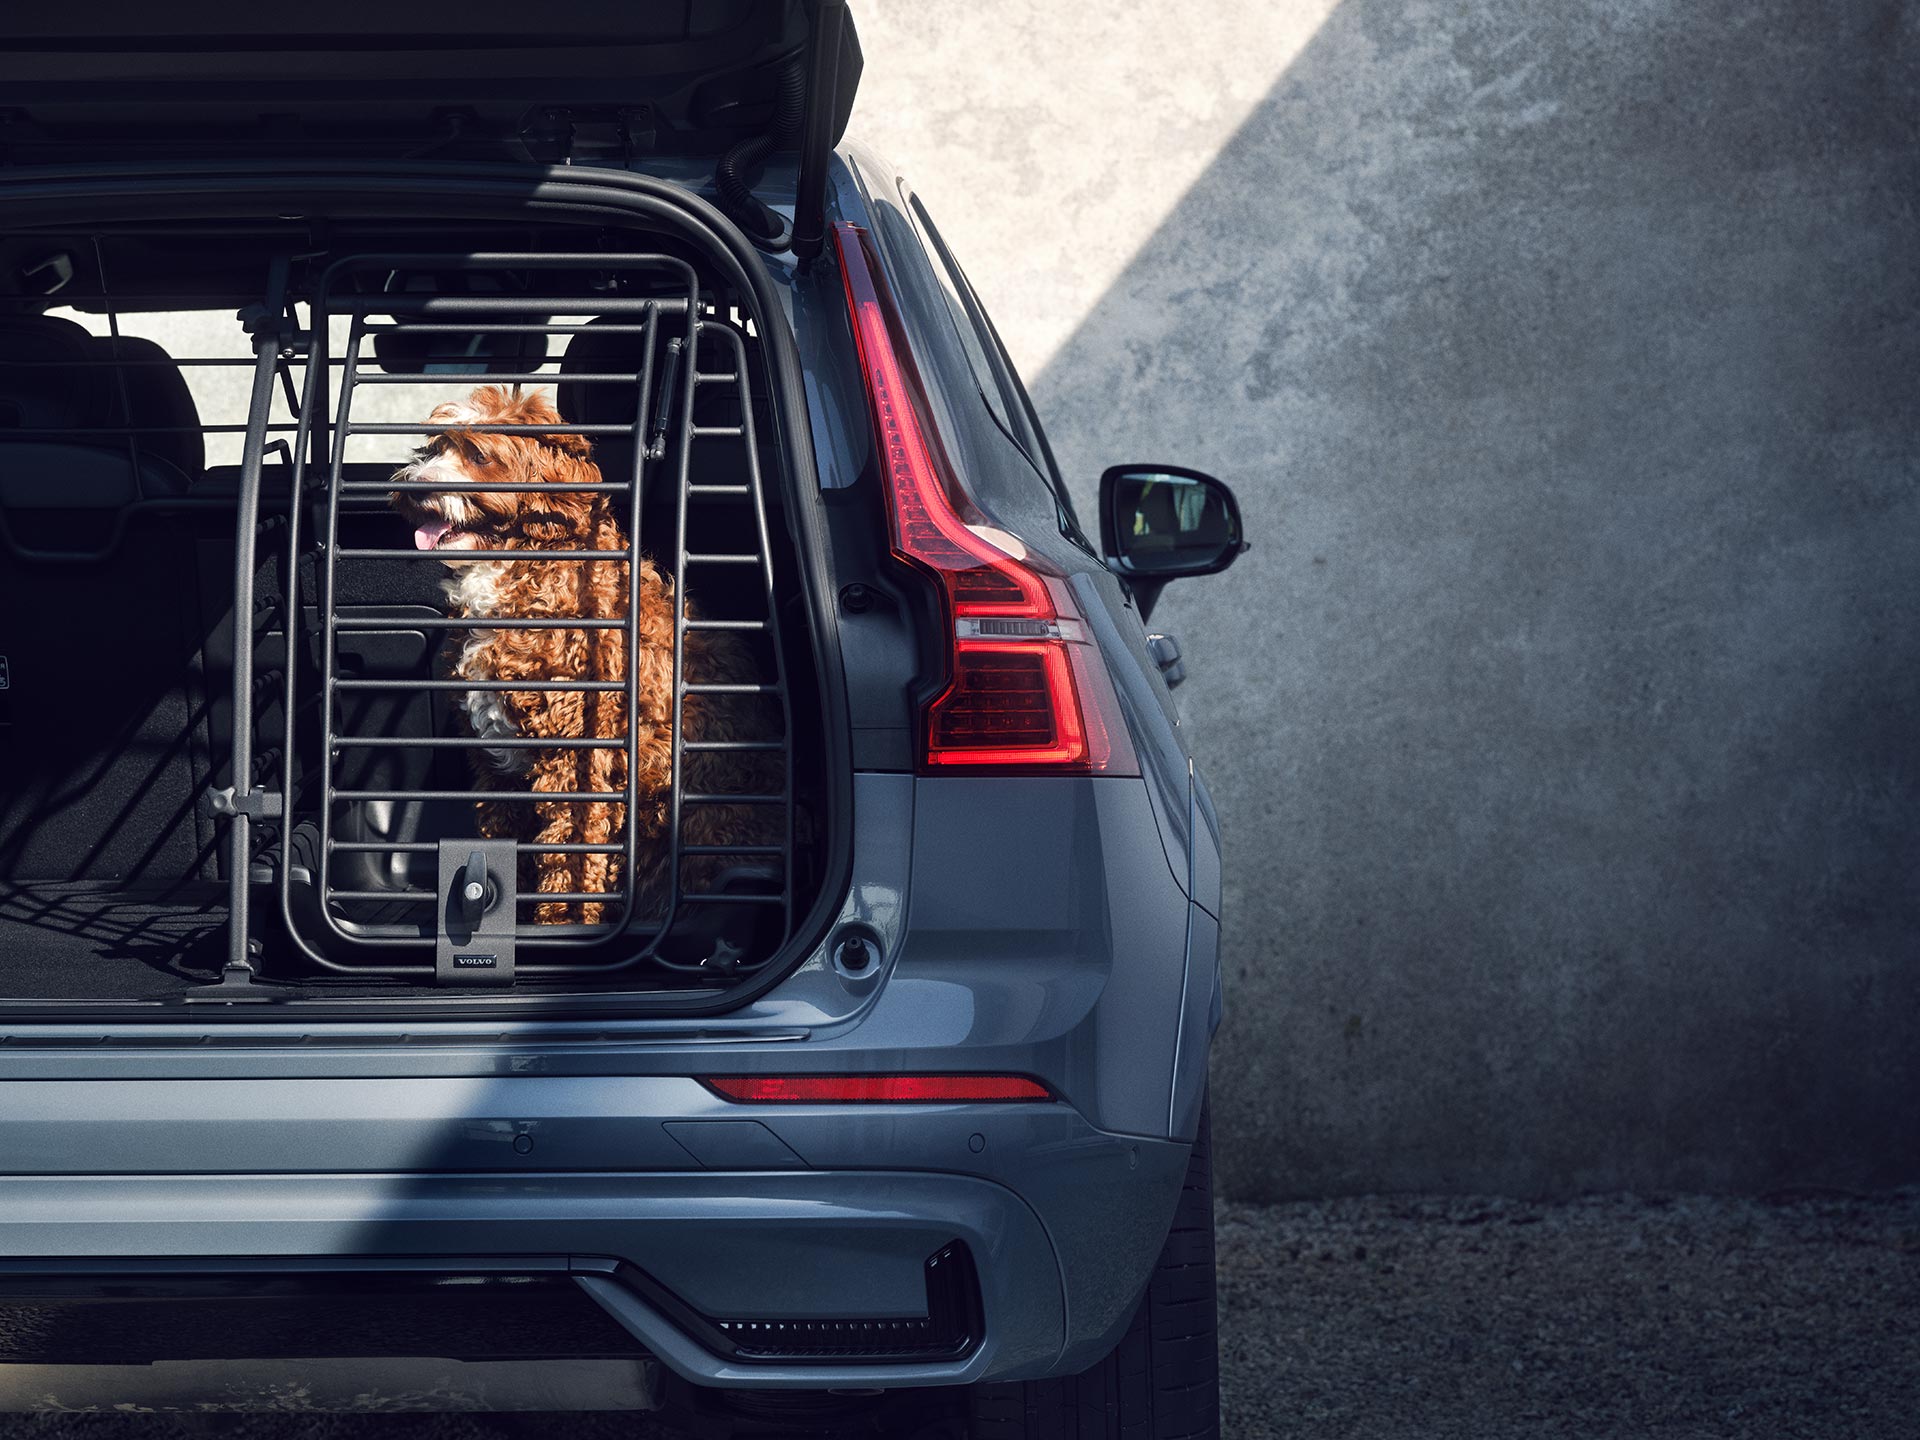 ボルボ車のラゲッジスペースに合わせ、走行中でもペットが安全かつ快適に過ごせるように専用設計されたドッグゲートの向こう側に座っている、毛色がブラウンの犬。